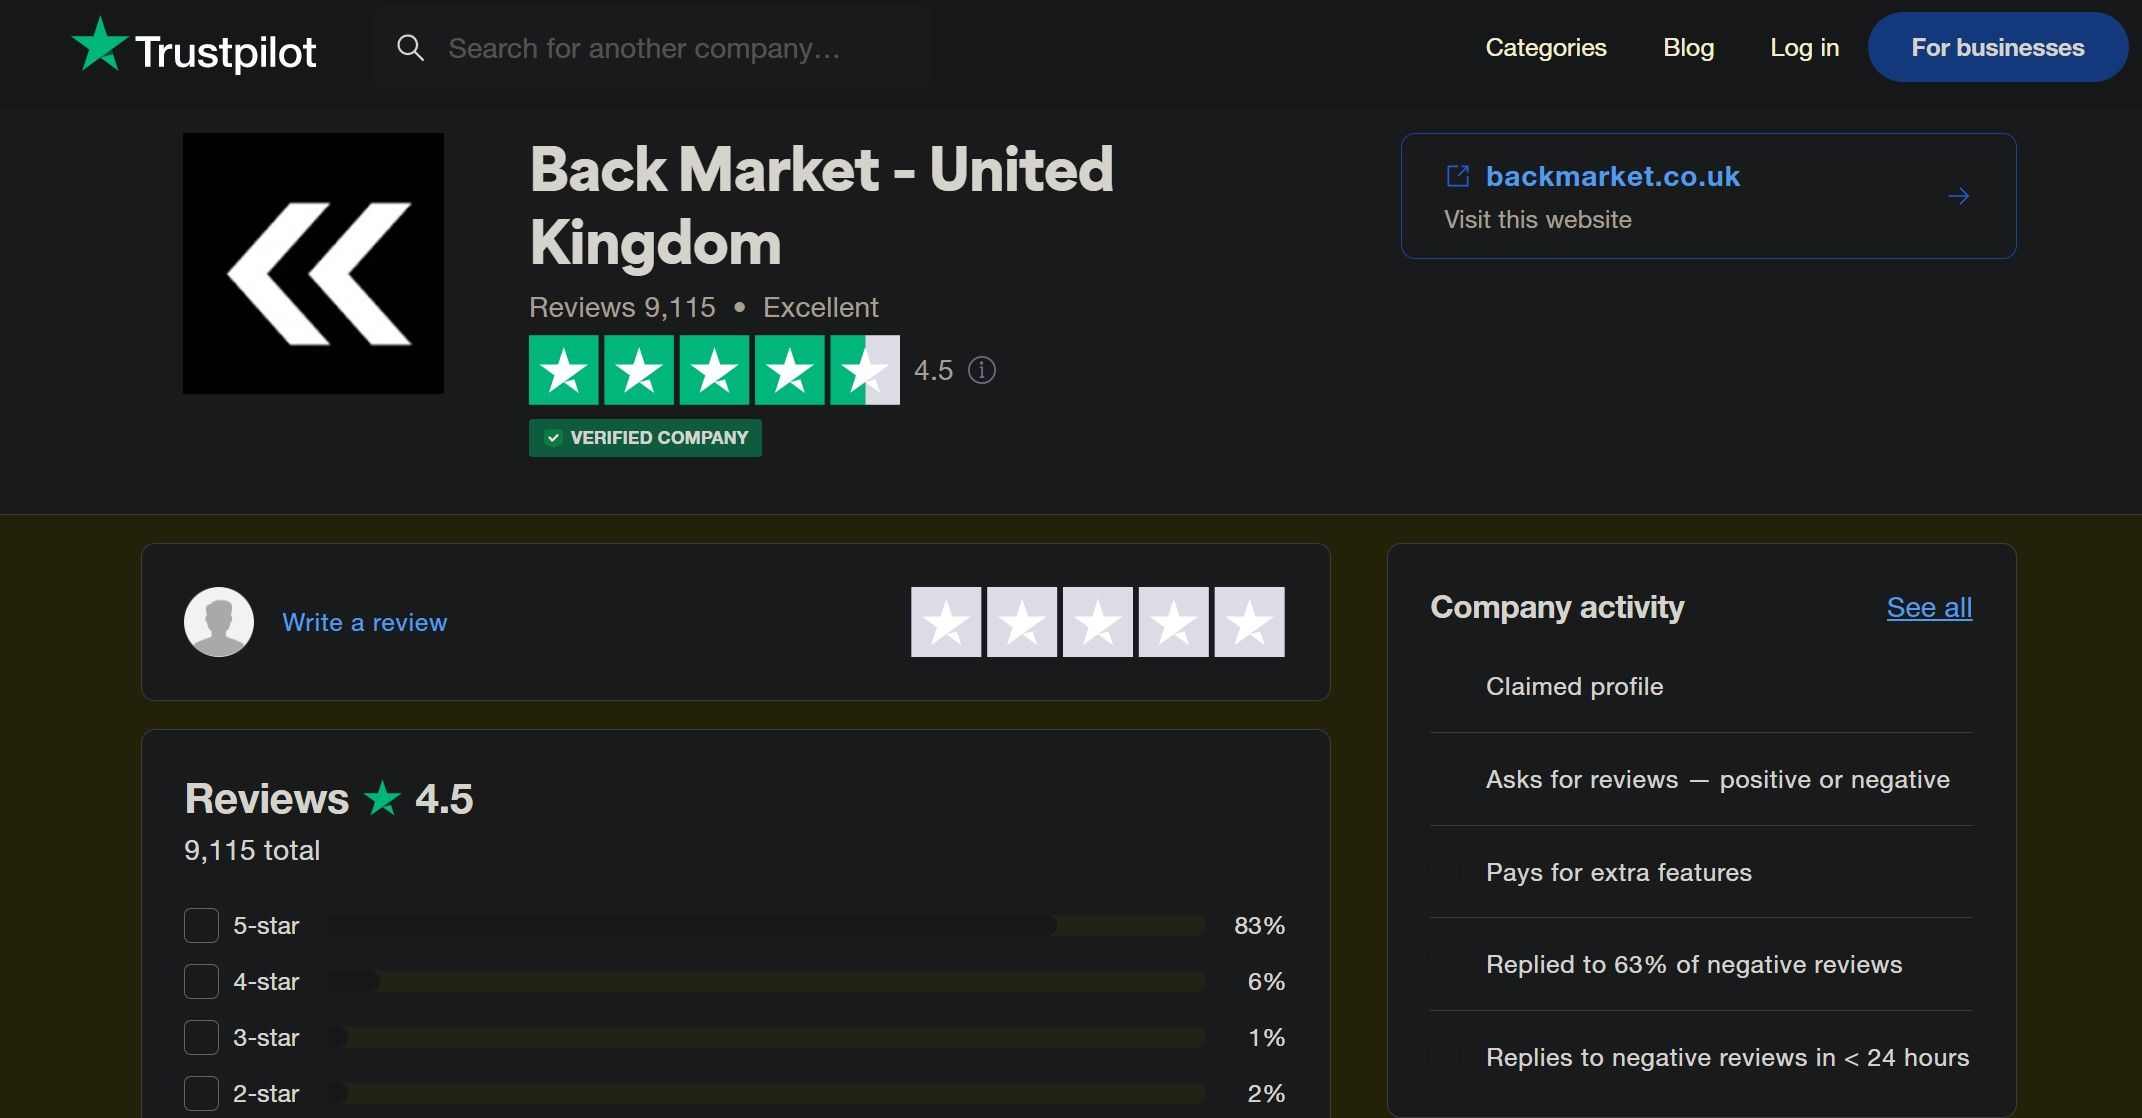 Back Market United Kingdom Ratings at Trustpilot